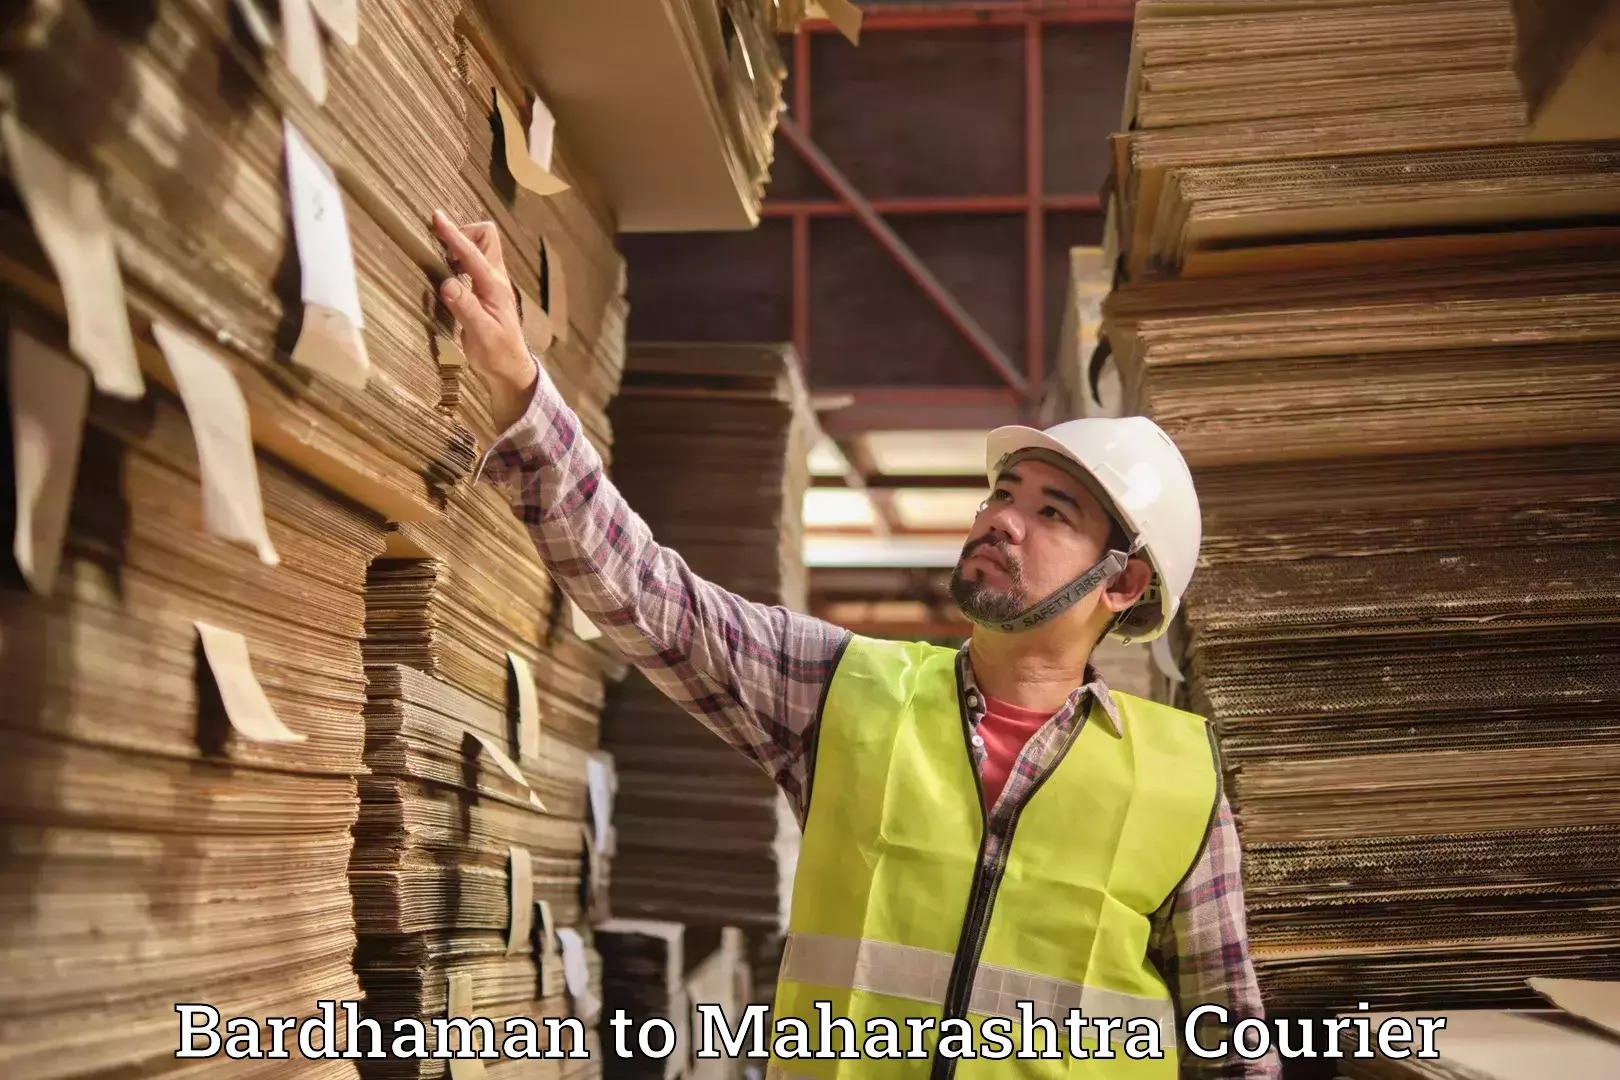 Luggage shipment tracking Bardhaman to Maharashtra